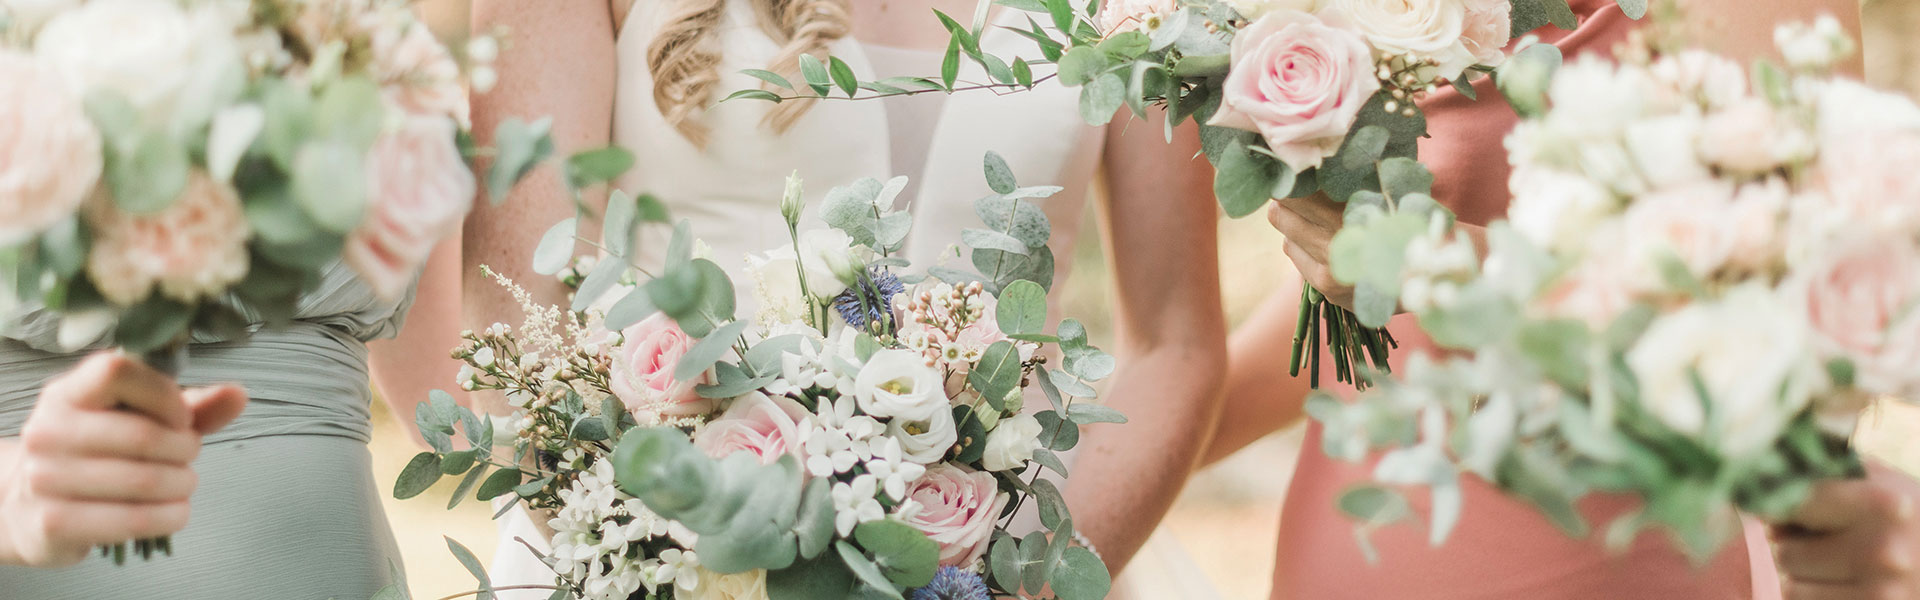 Wedding floral design